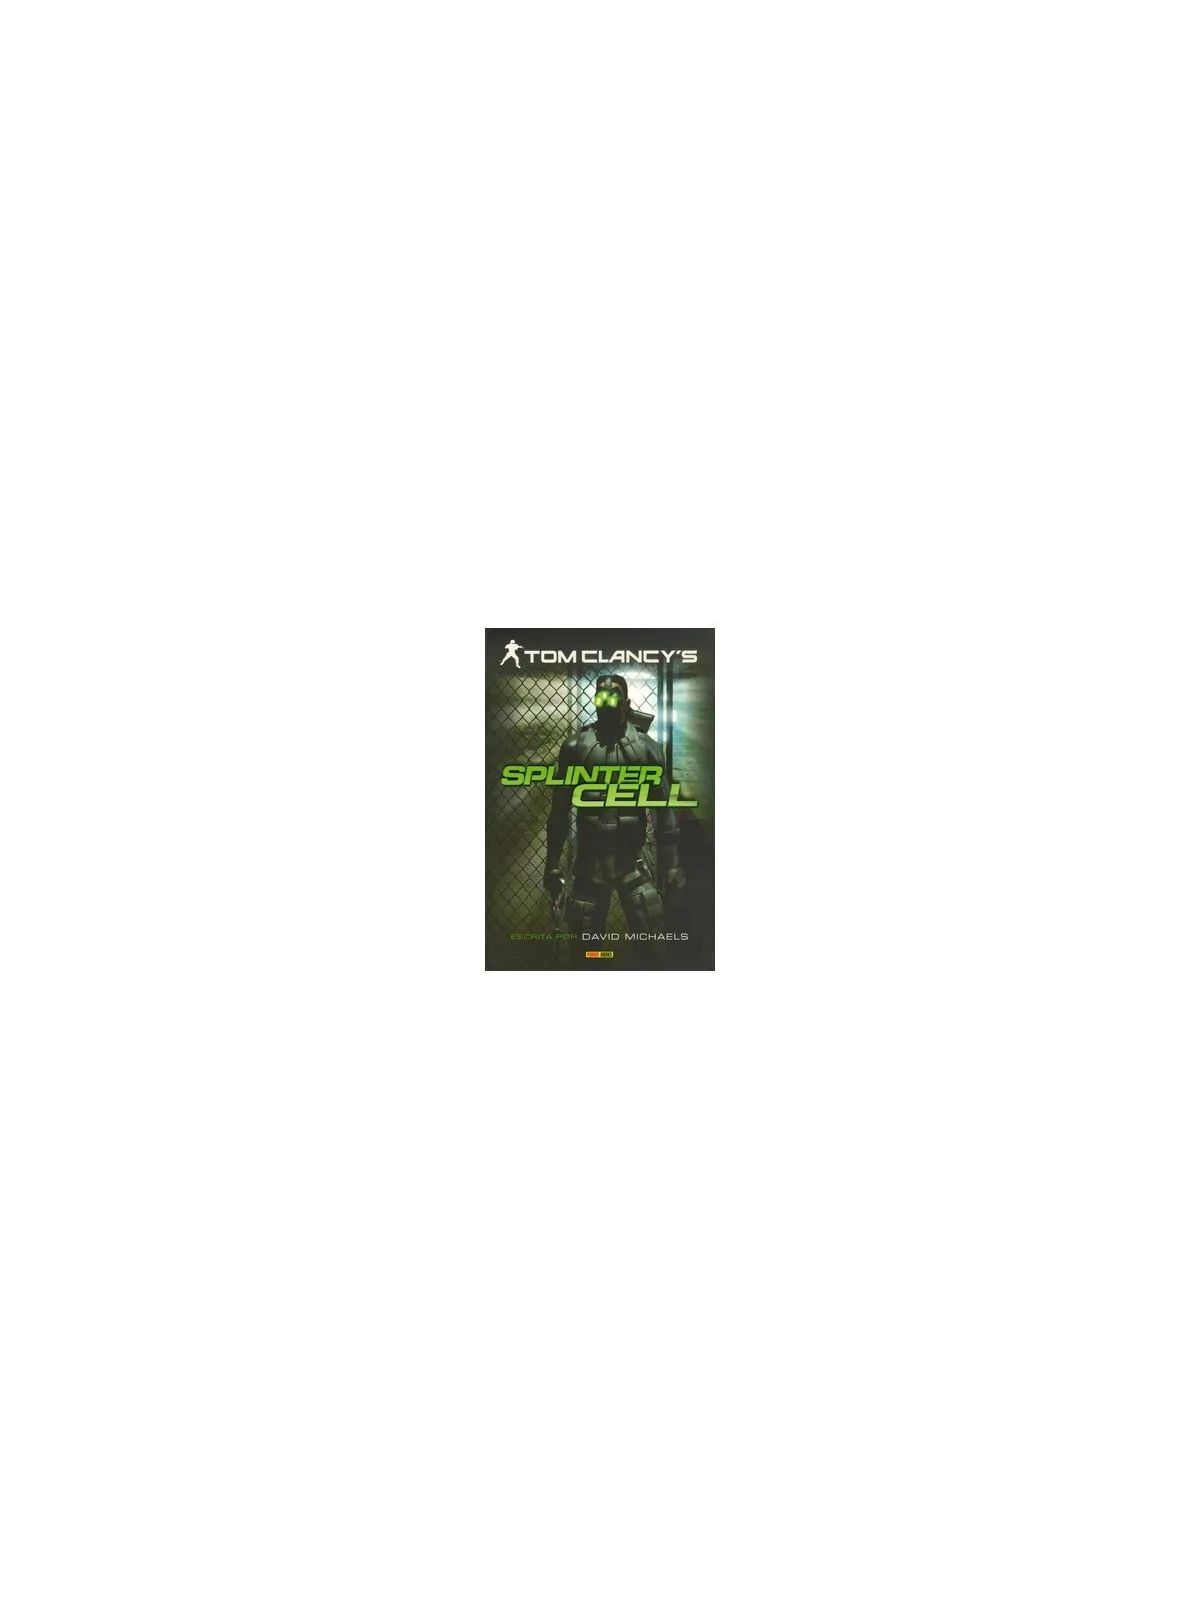 Comprar Tom Clancy's Splinter Cell barato al mejor precio 12,30 € de P